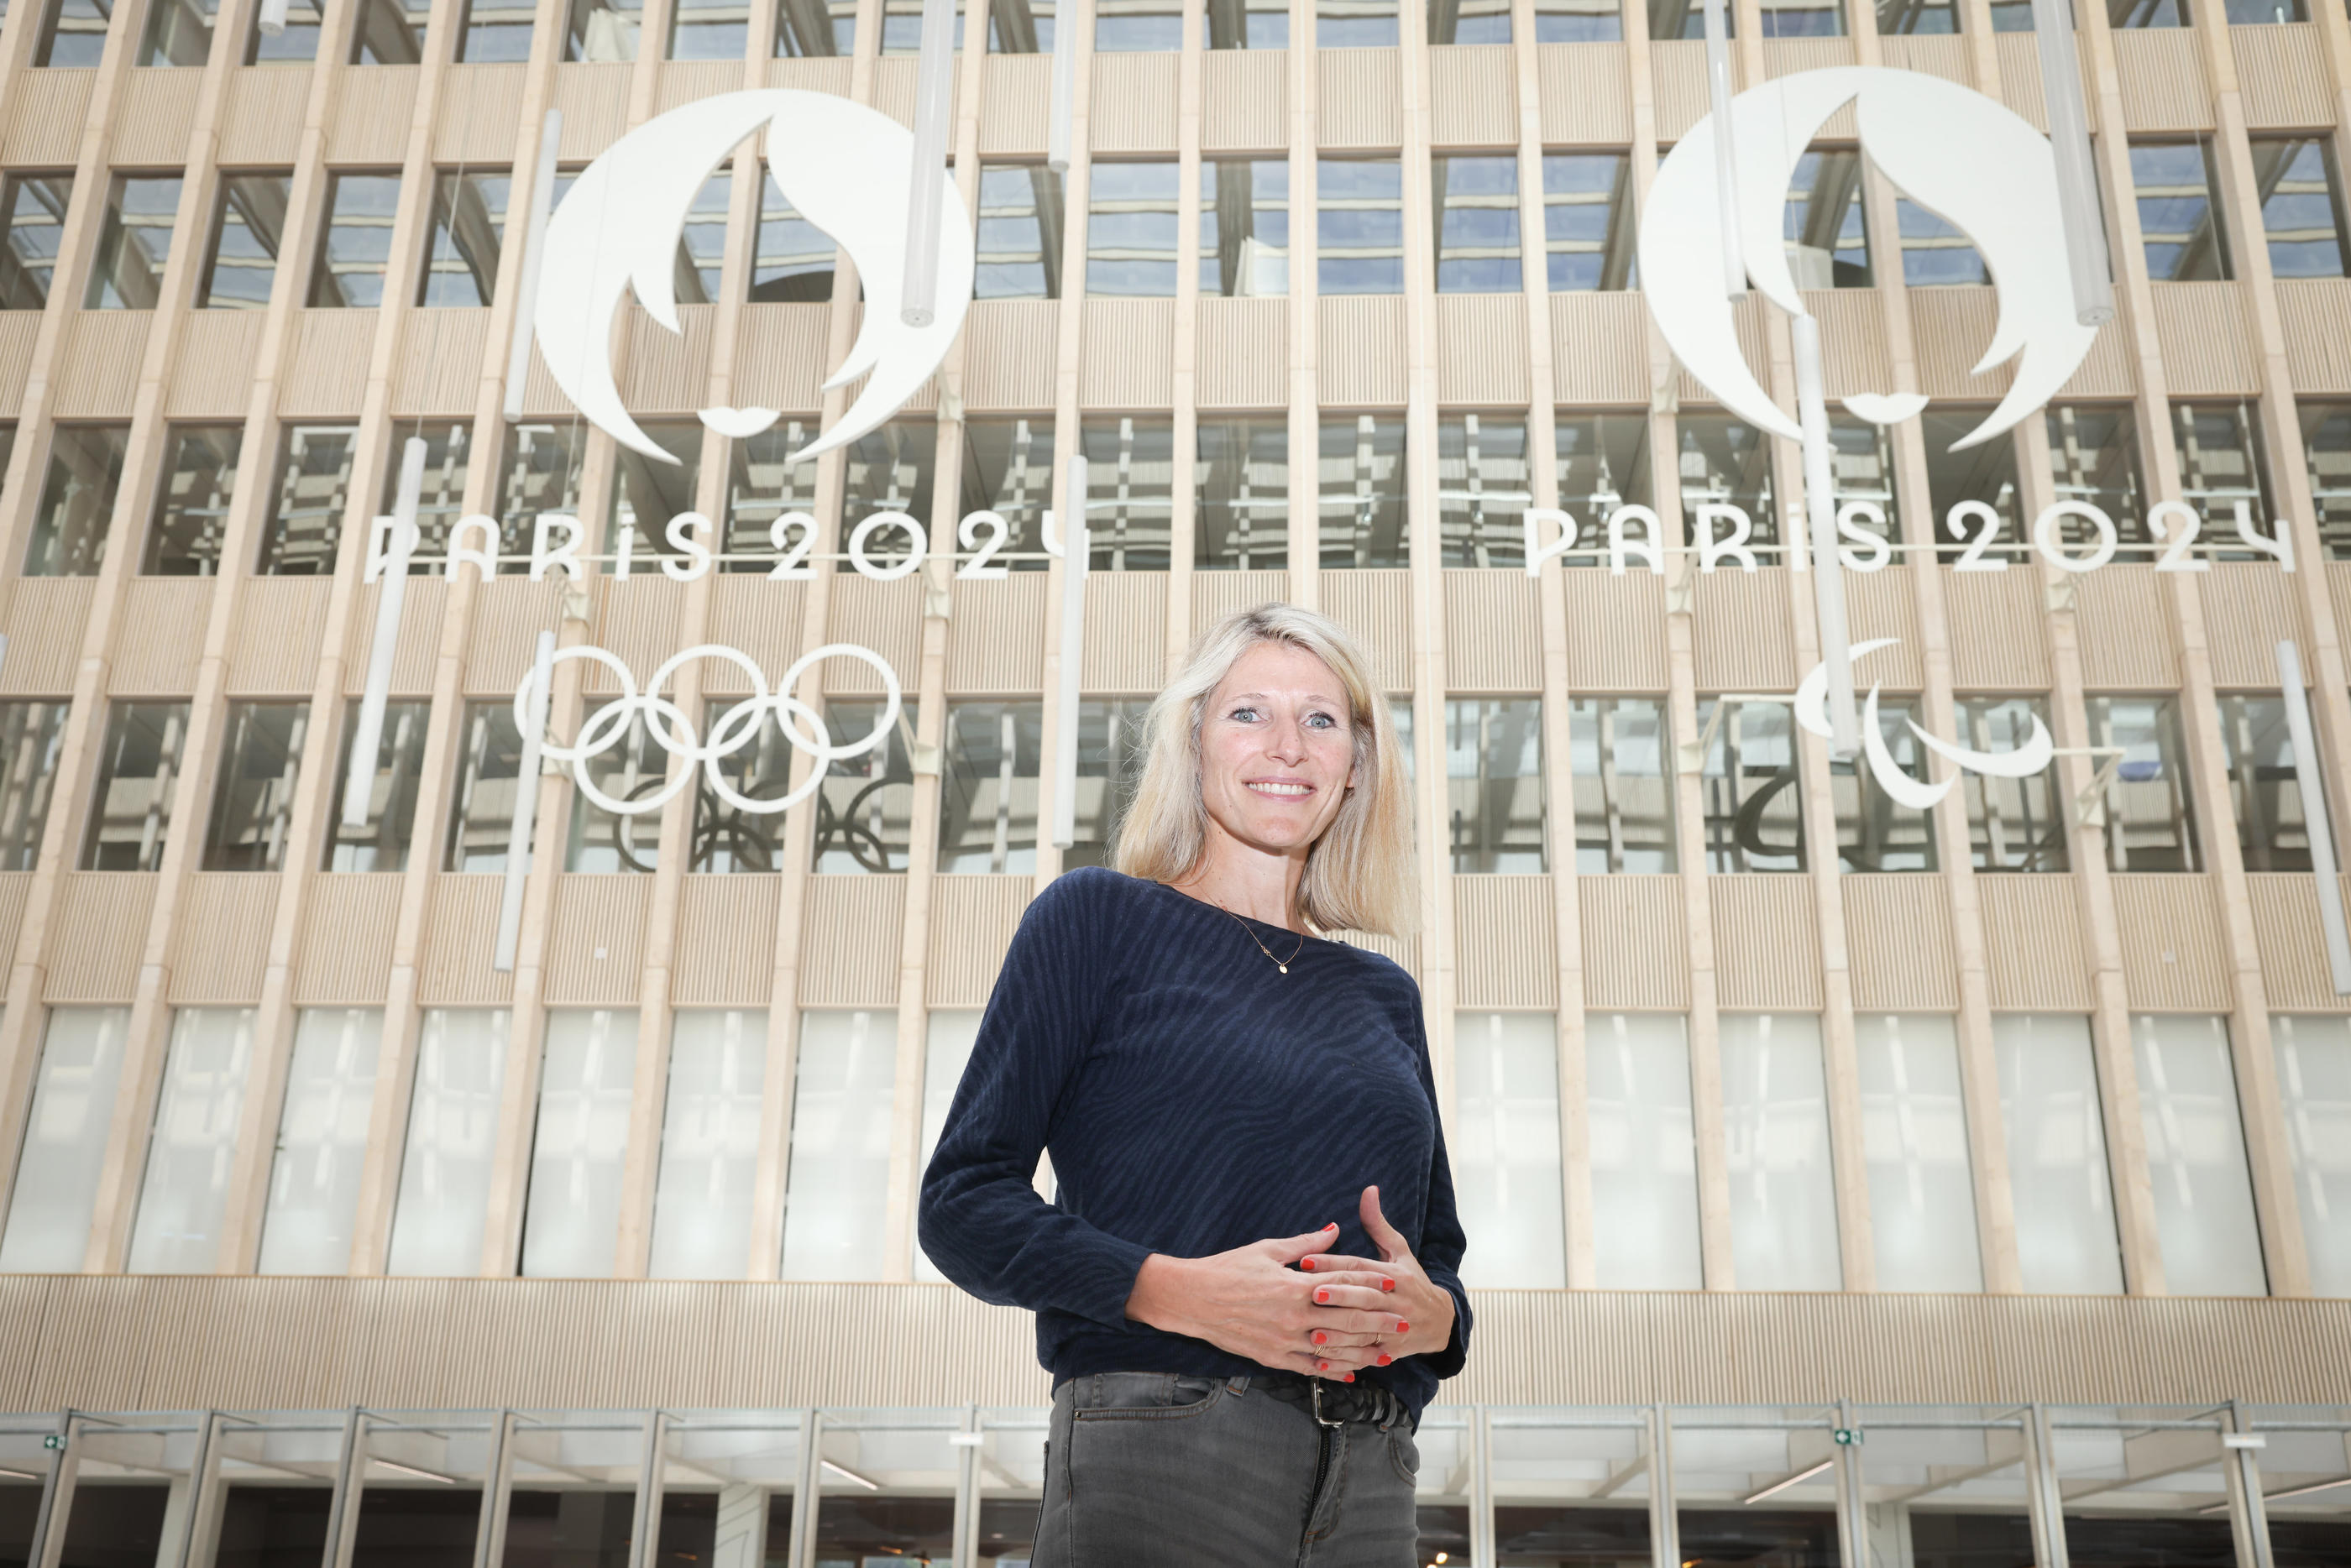 Marie Barsacq espère que les nombreuses opportunités offertes par les Jeux de Paris permettront à des personnes éloignées depuis longtemps de l'emploi de se réinsérer. LP/Fred Dugit